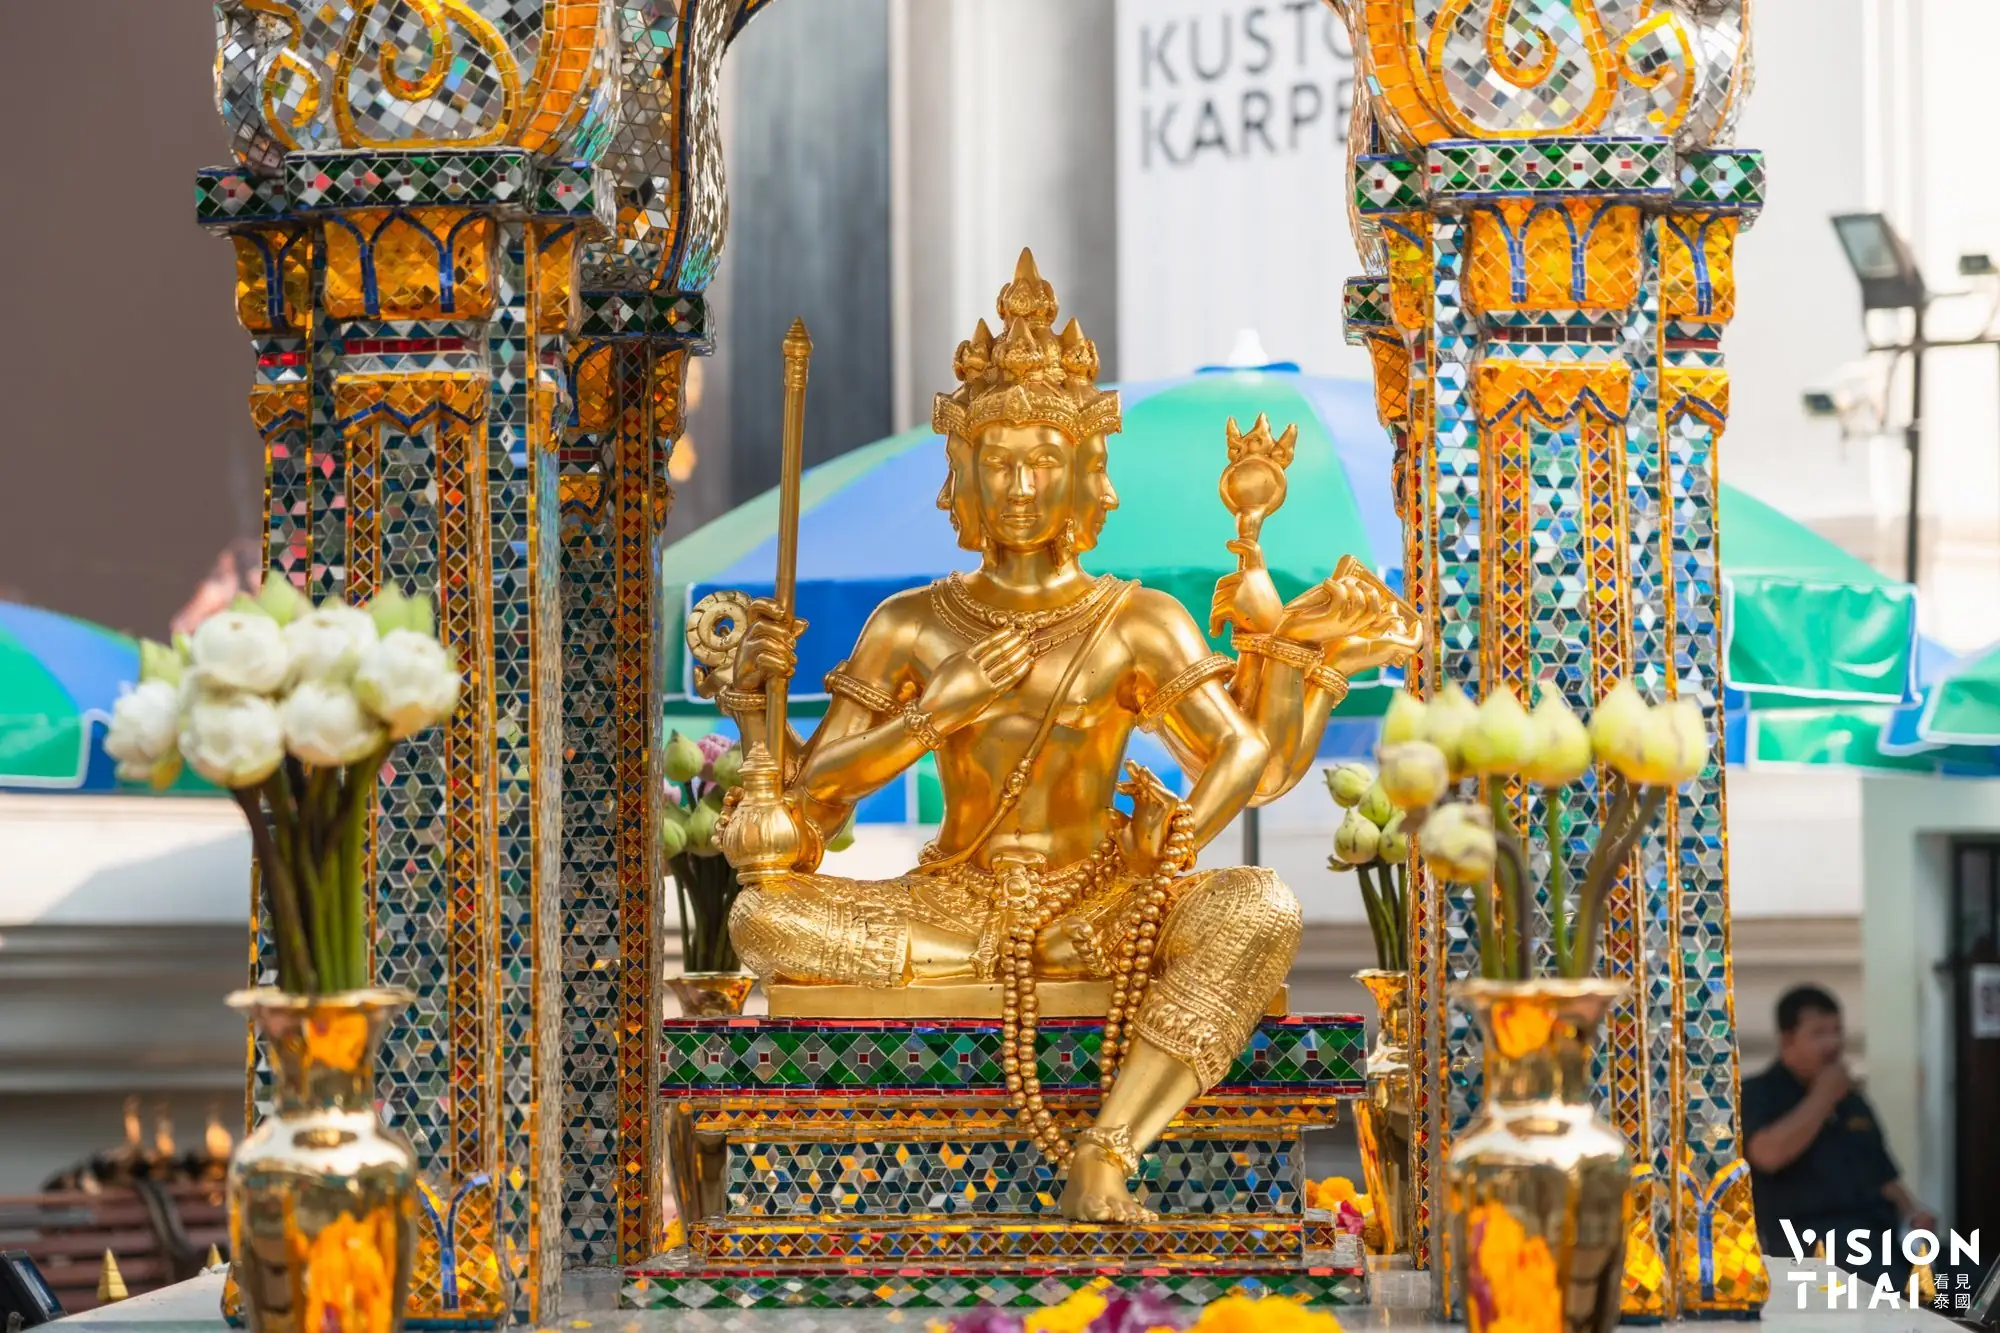 曼谷四面佛梵天位於君悅飯店前，香火鼎盛，而成為著名曼谷景點（圖片來源：Vision Thai 看見泰國）